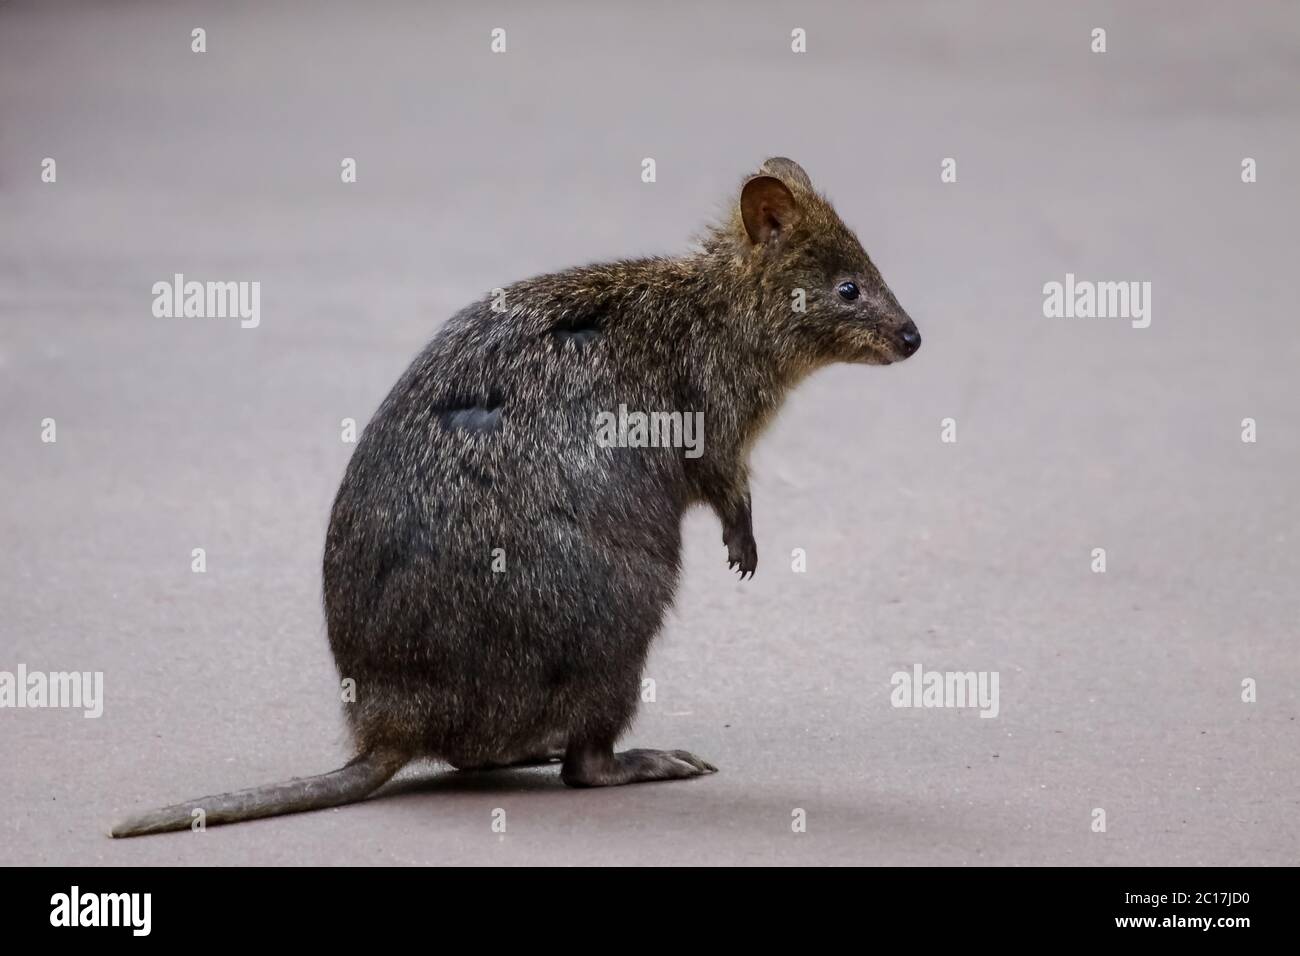 Joli quokka, petite espèce de kangourou, Valley of the Giants, Australie occidentale Banque D'Images